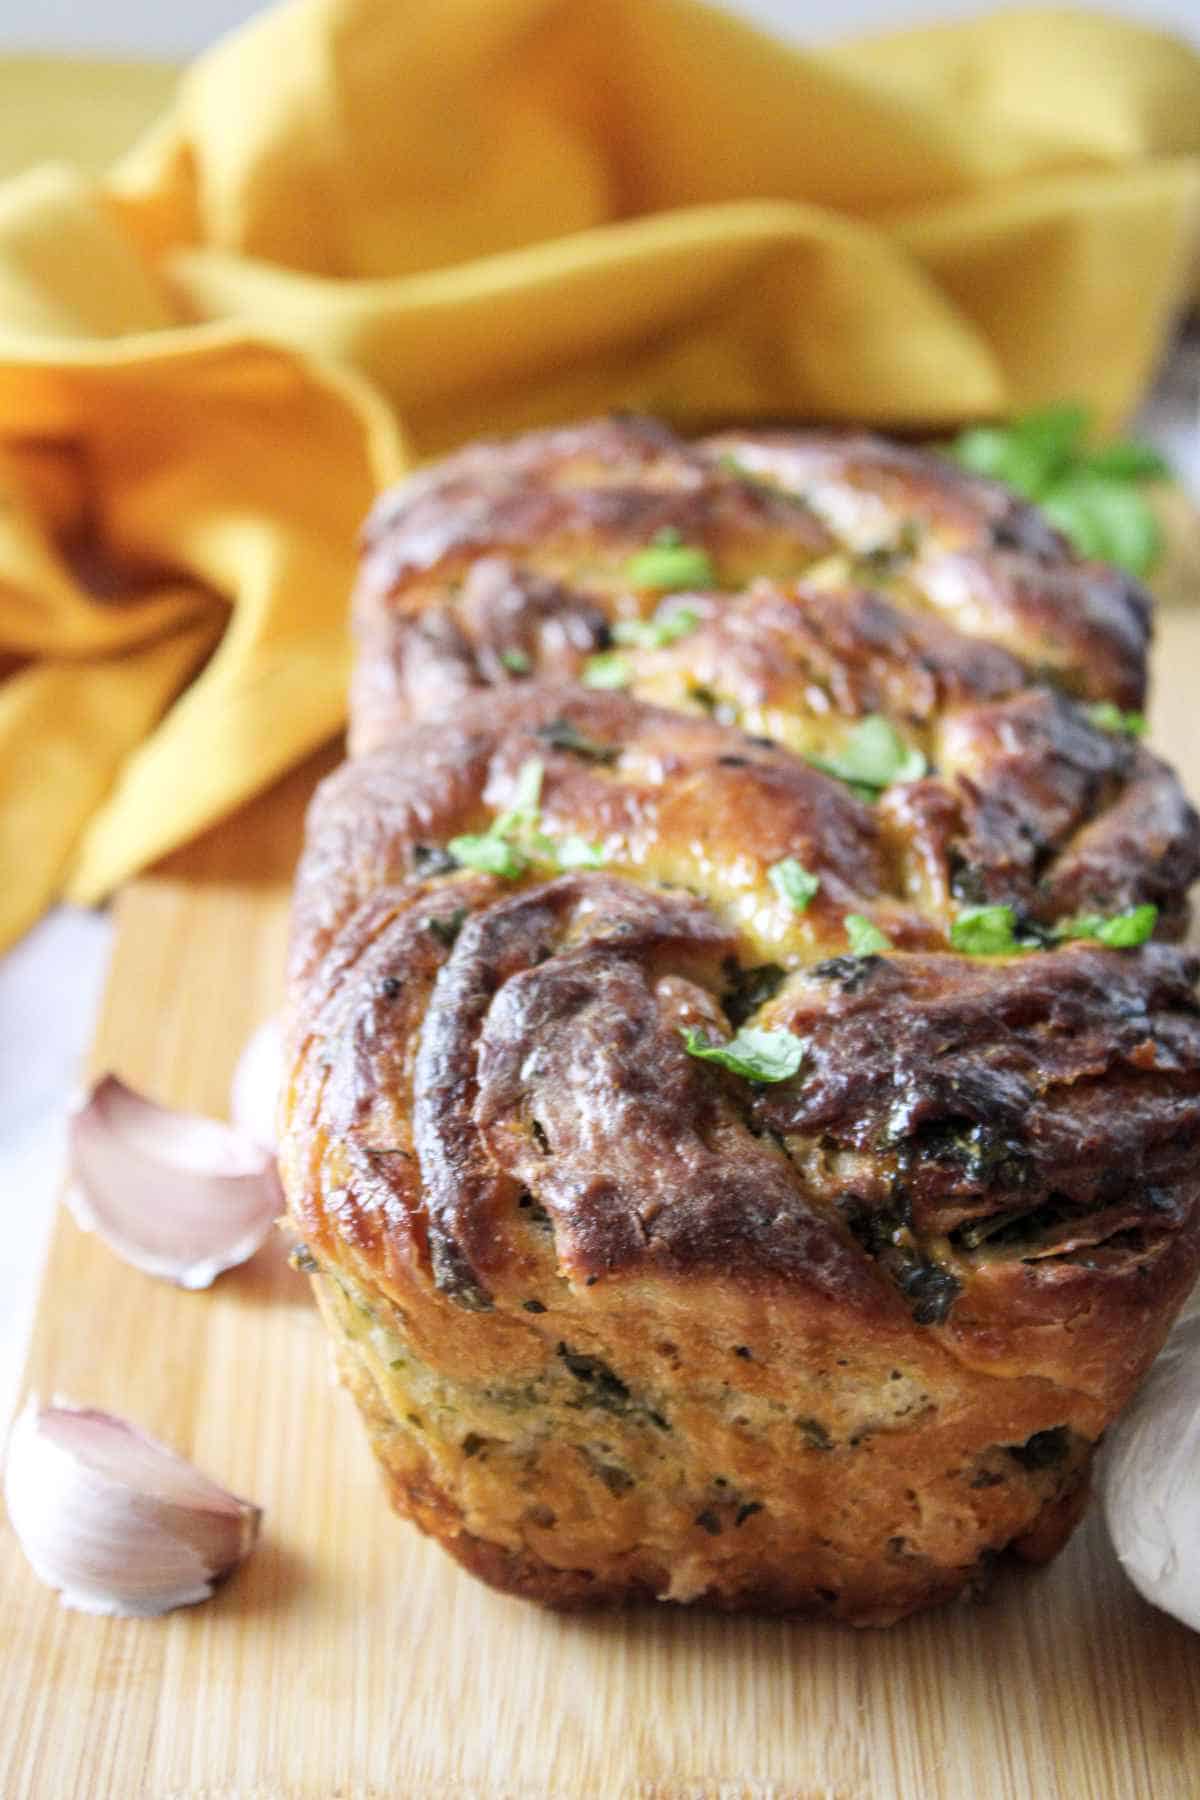 loaf of fresh baked twisted garlic bread on a wood cutting board.